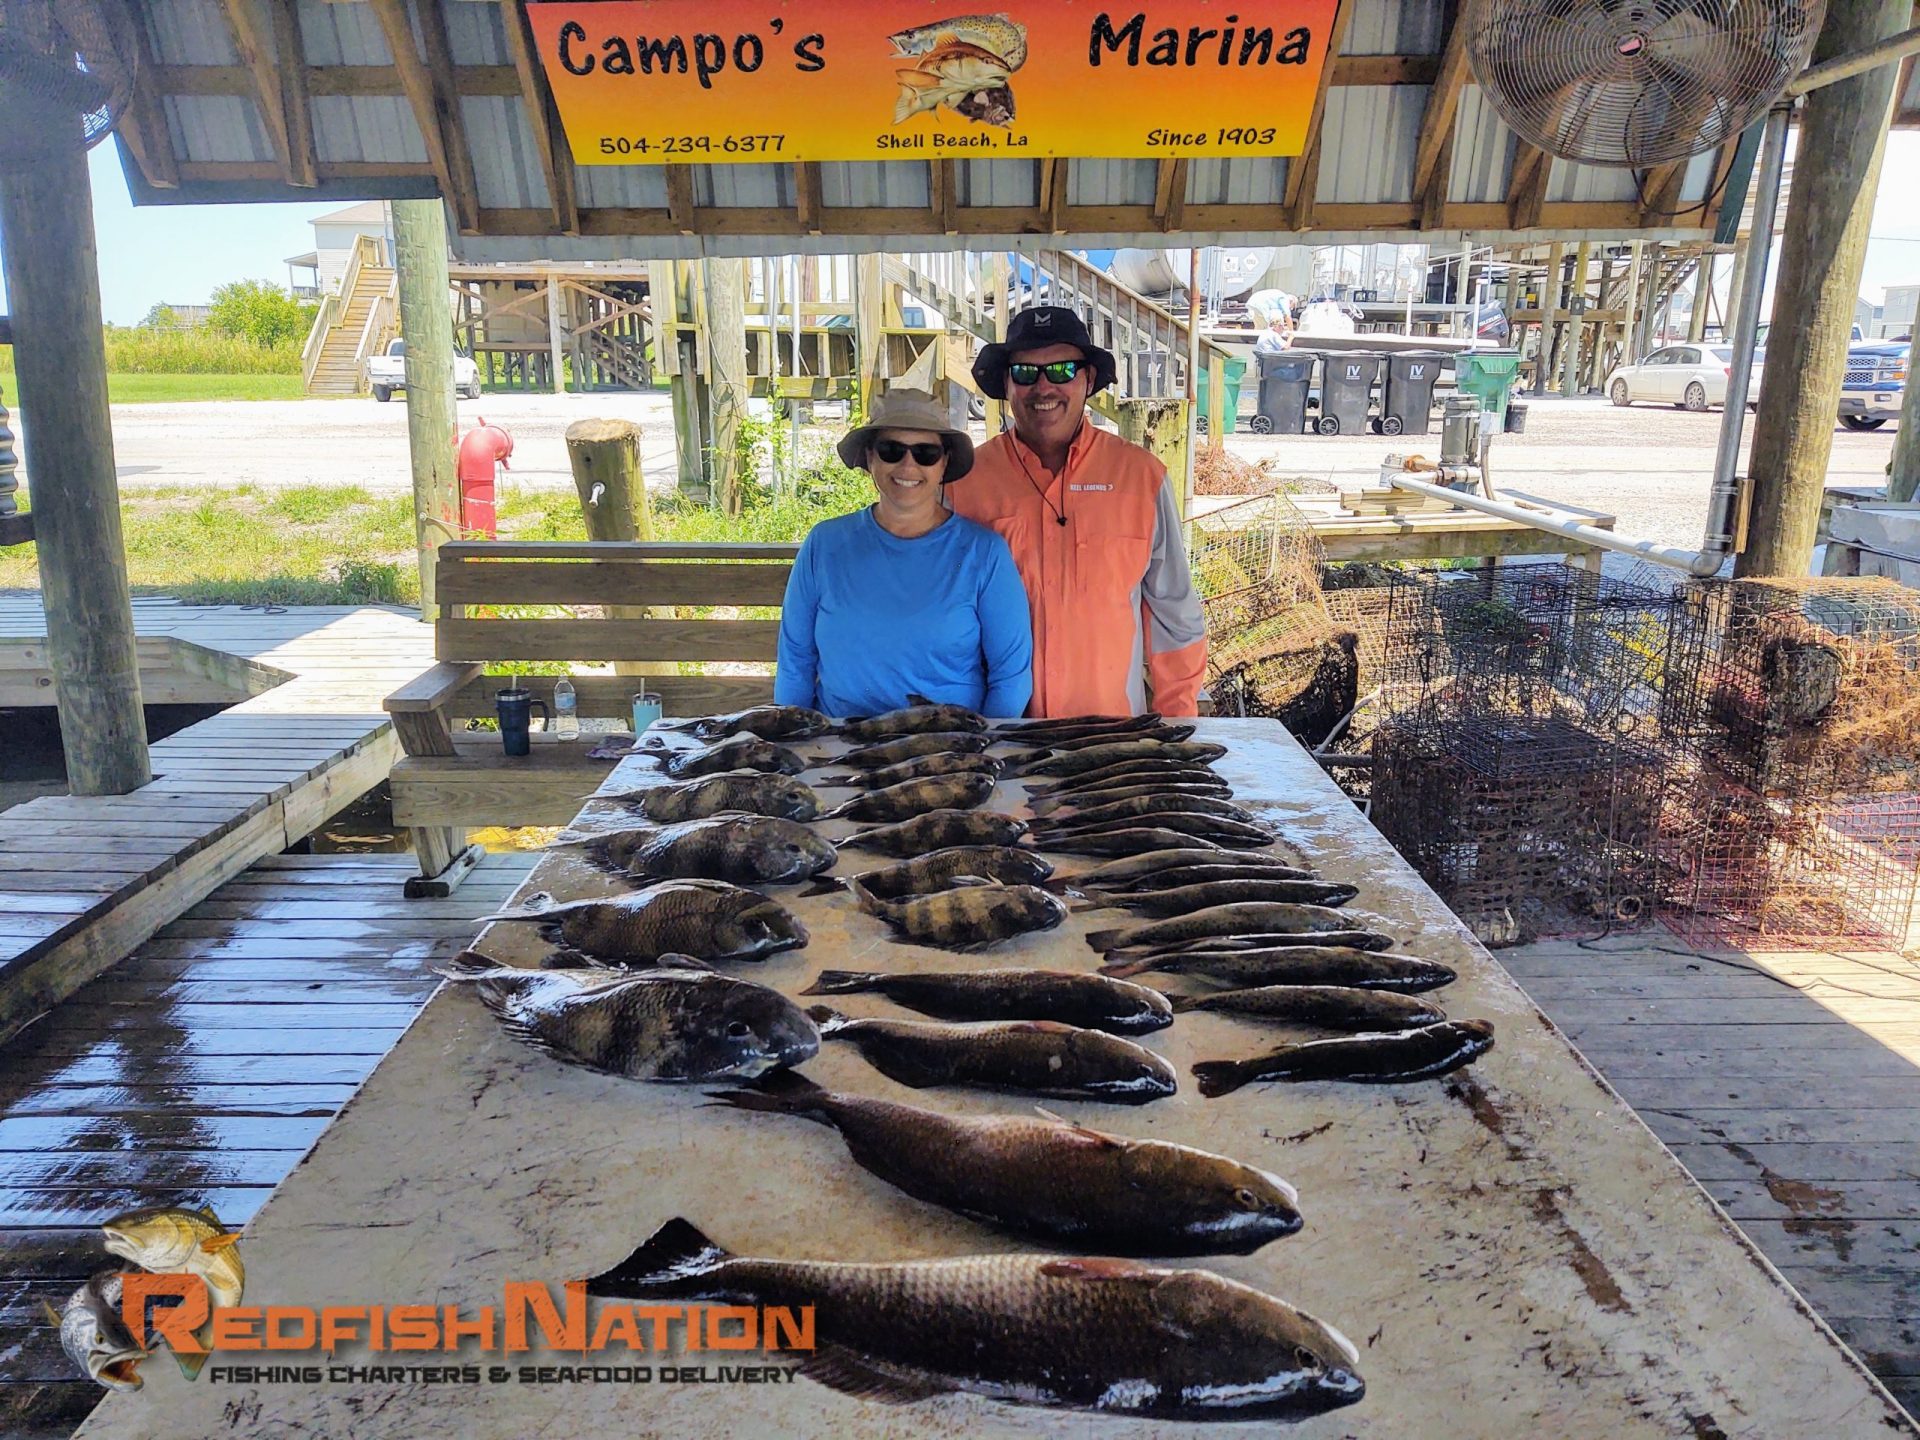 Guided Louisiana Fishing Charter - Redfish Nation - Campo's Marina Catch